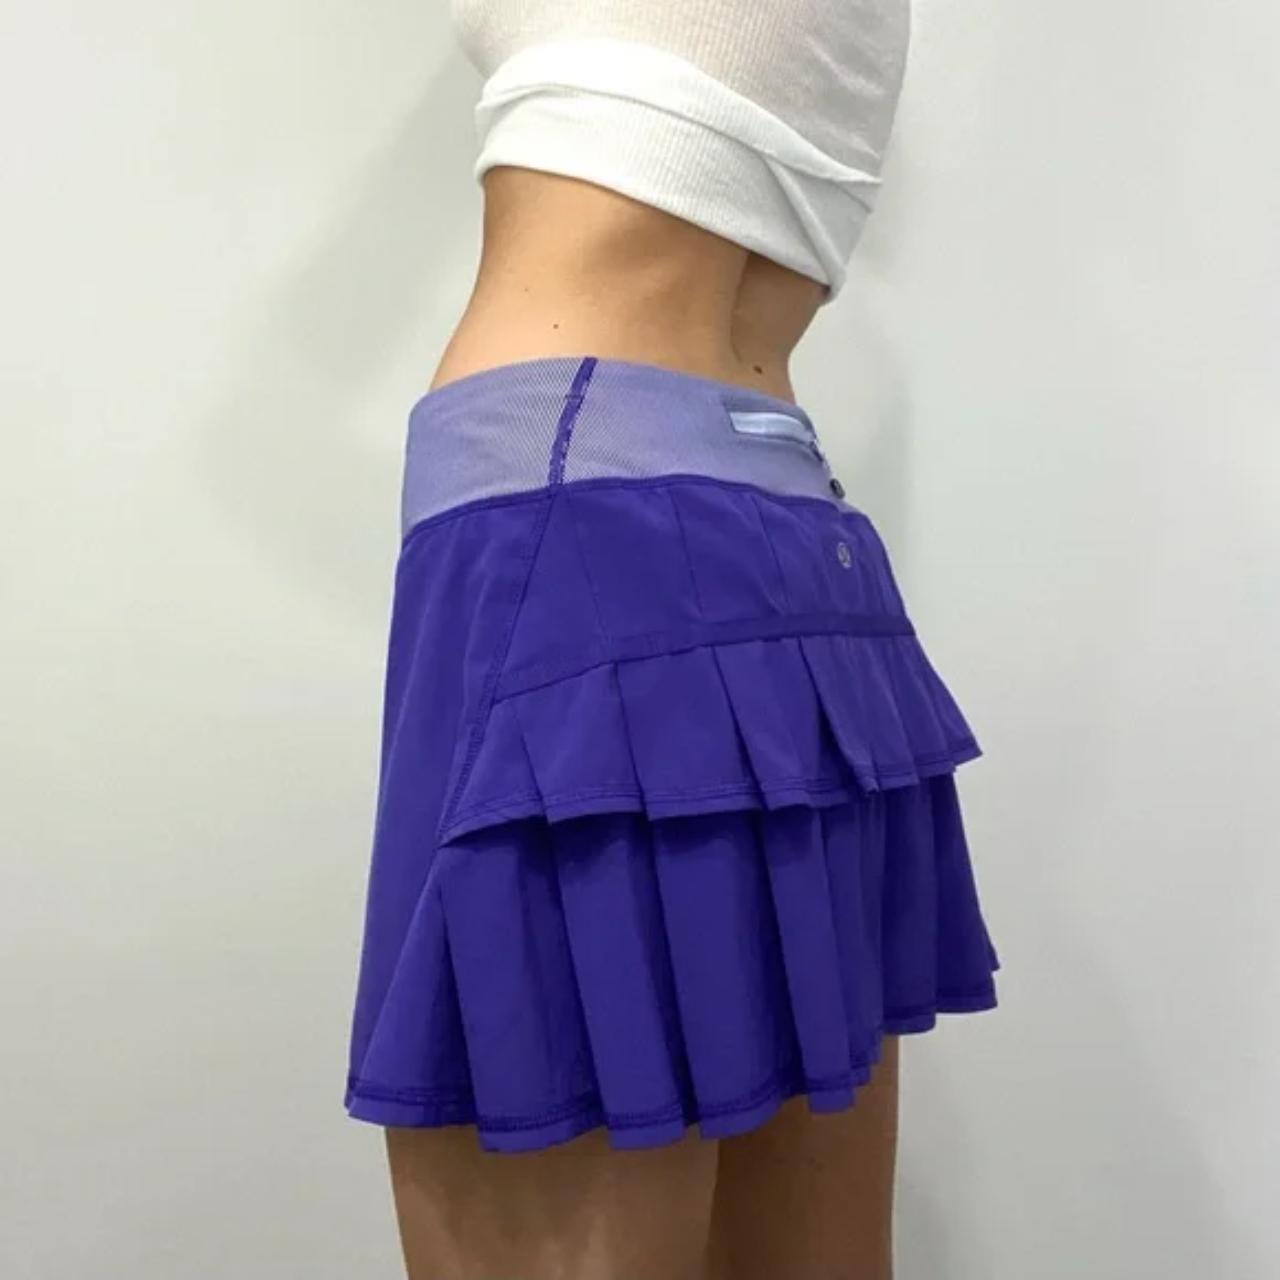 Lululemon Athletica Pace Setter Skirt in Bruised